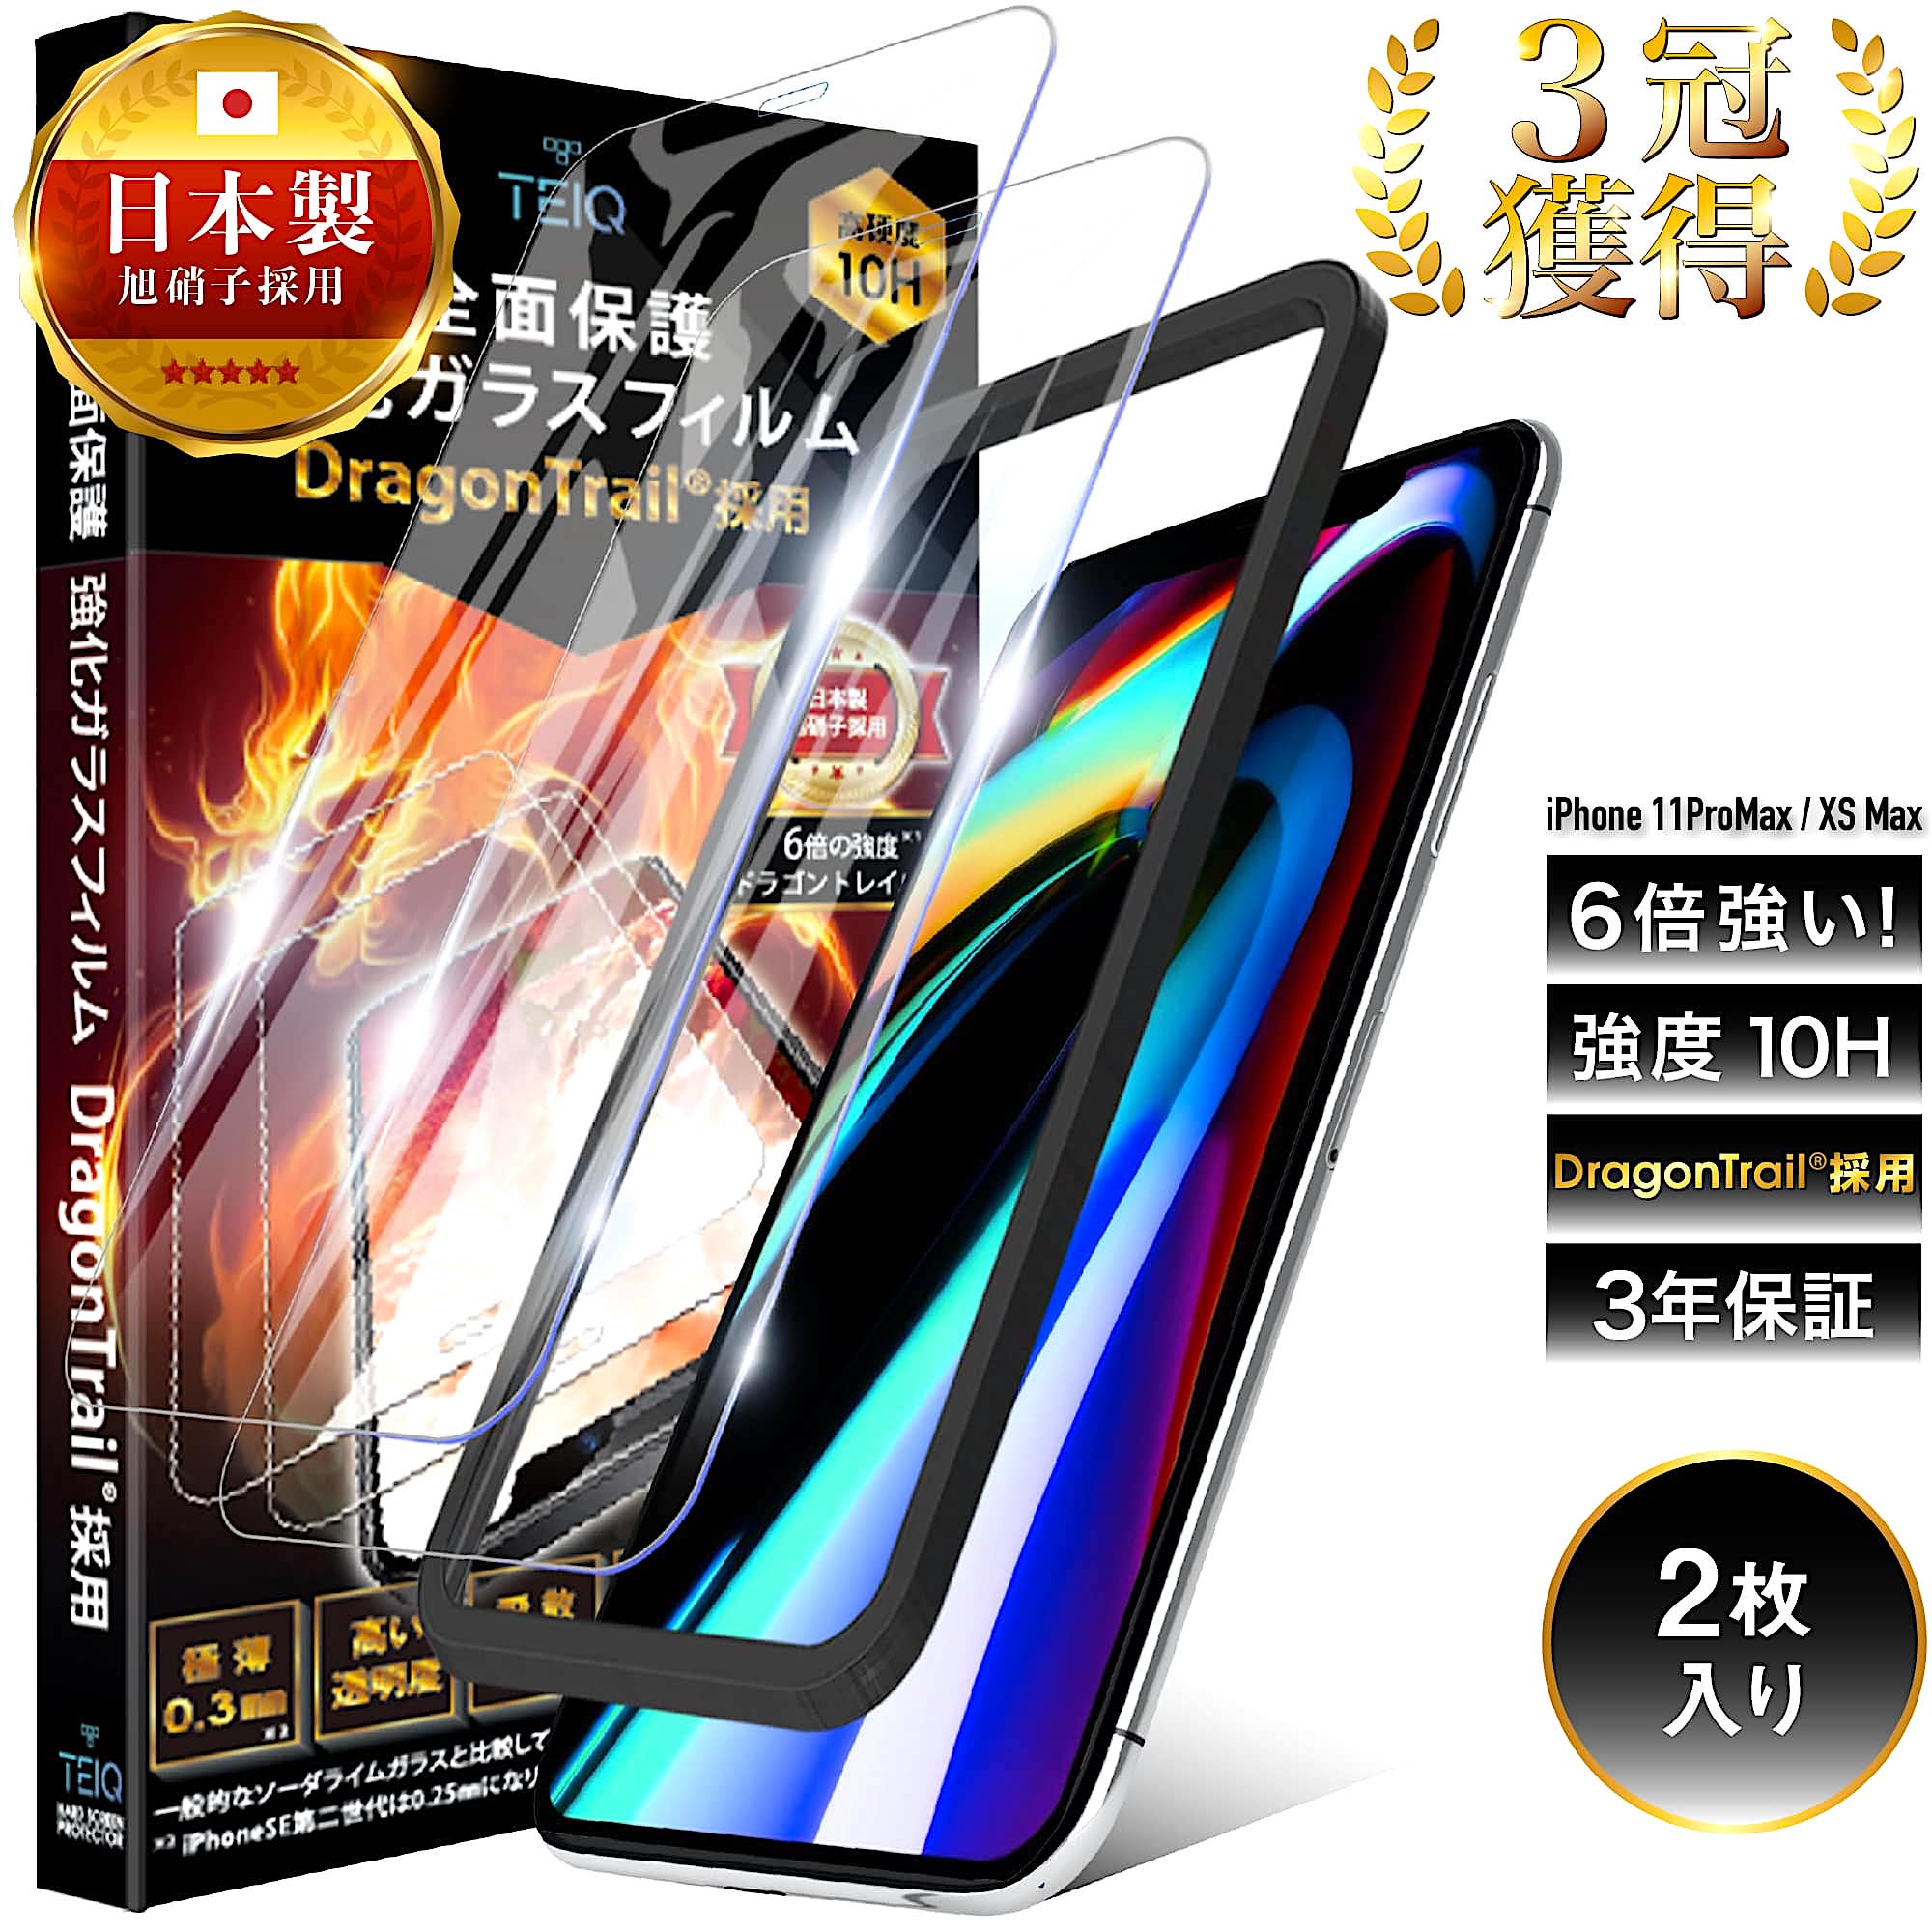 ドラゴントレイル iPhone11ProMax iPhoneXSMax ガラスフィルム 全面保護 10H 強化ガラス 保護フィルム iPhone11Pro Max プロマックス XS マックス アイフォン 11 ProMax 10s 全面 ガラス フィルム 日本製 旭硝子 TEIQ 